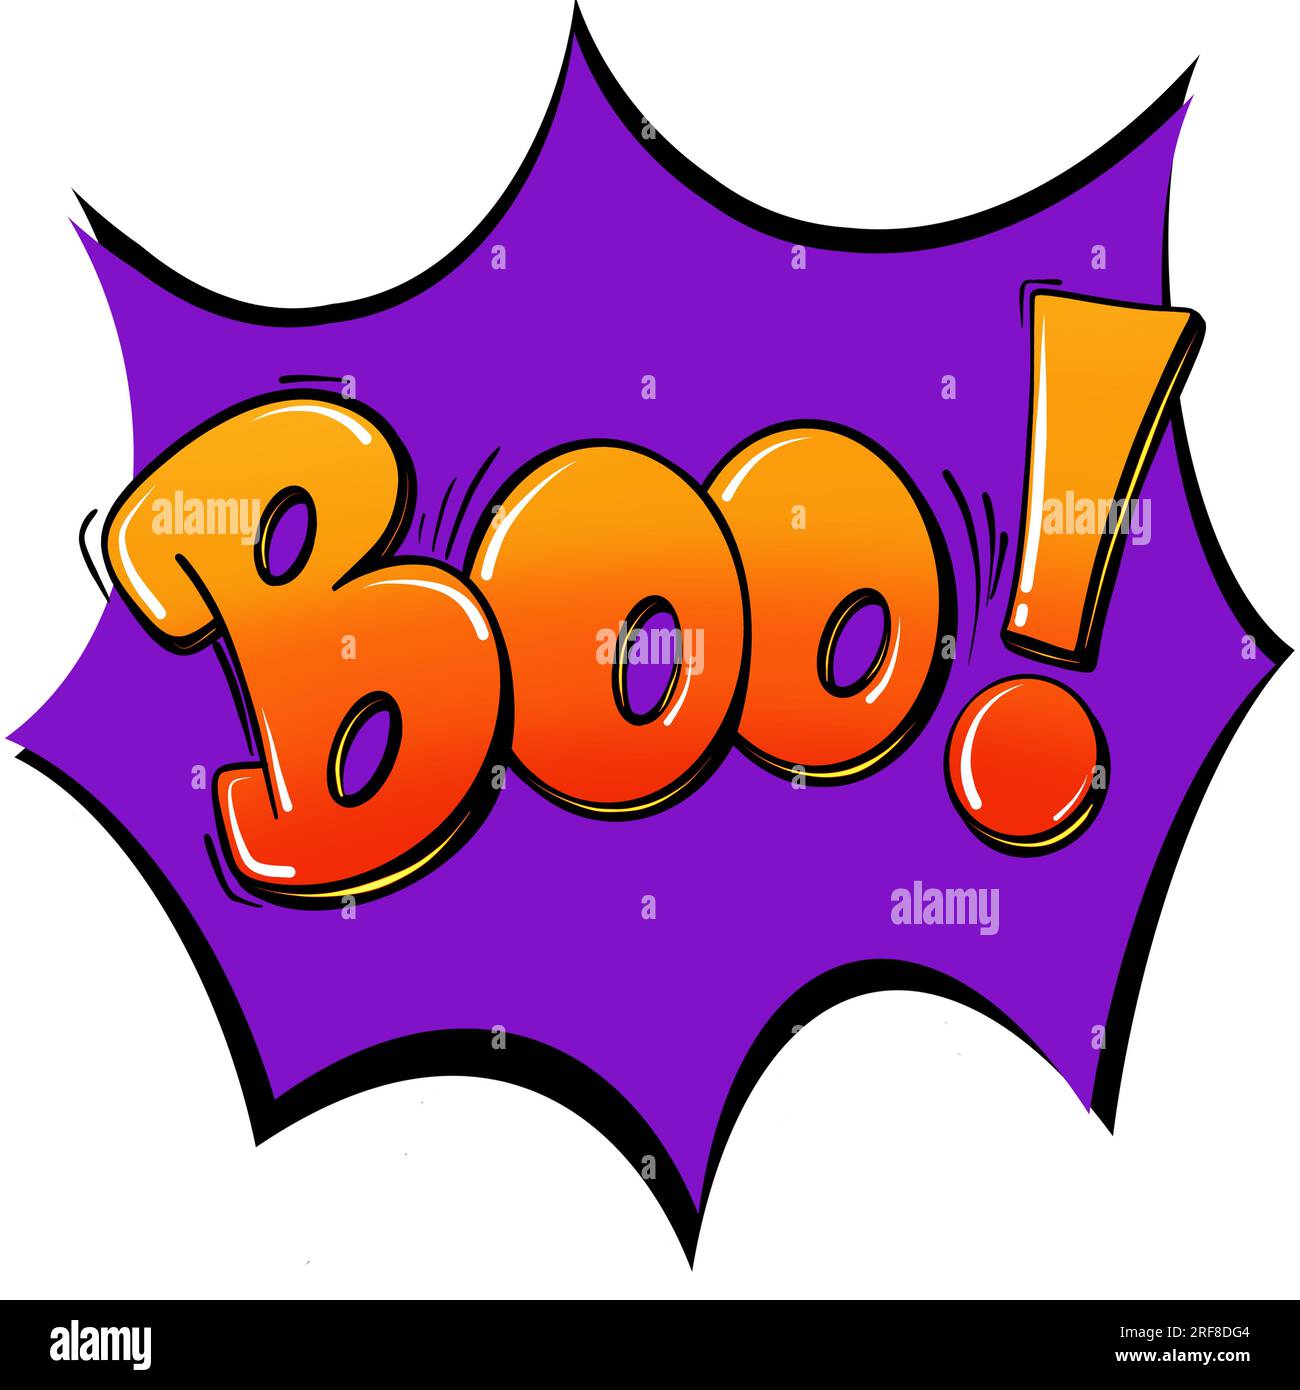 Illustrazione della clip art di Halloween con la parola Boo in lettere  gialle/arancioni su sfondo viola Foto stock - Alamy